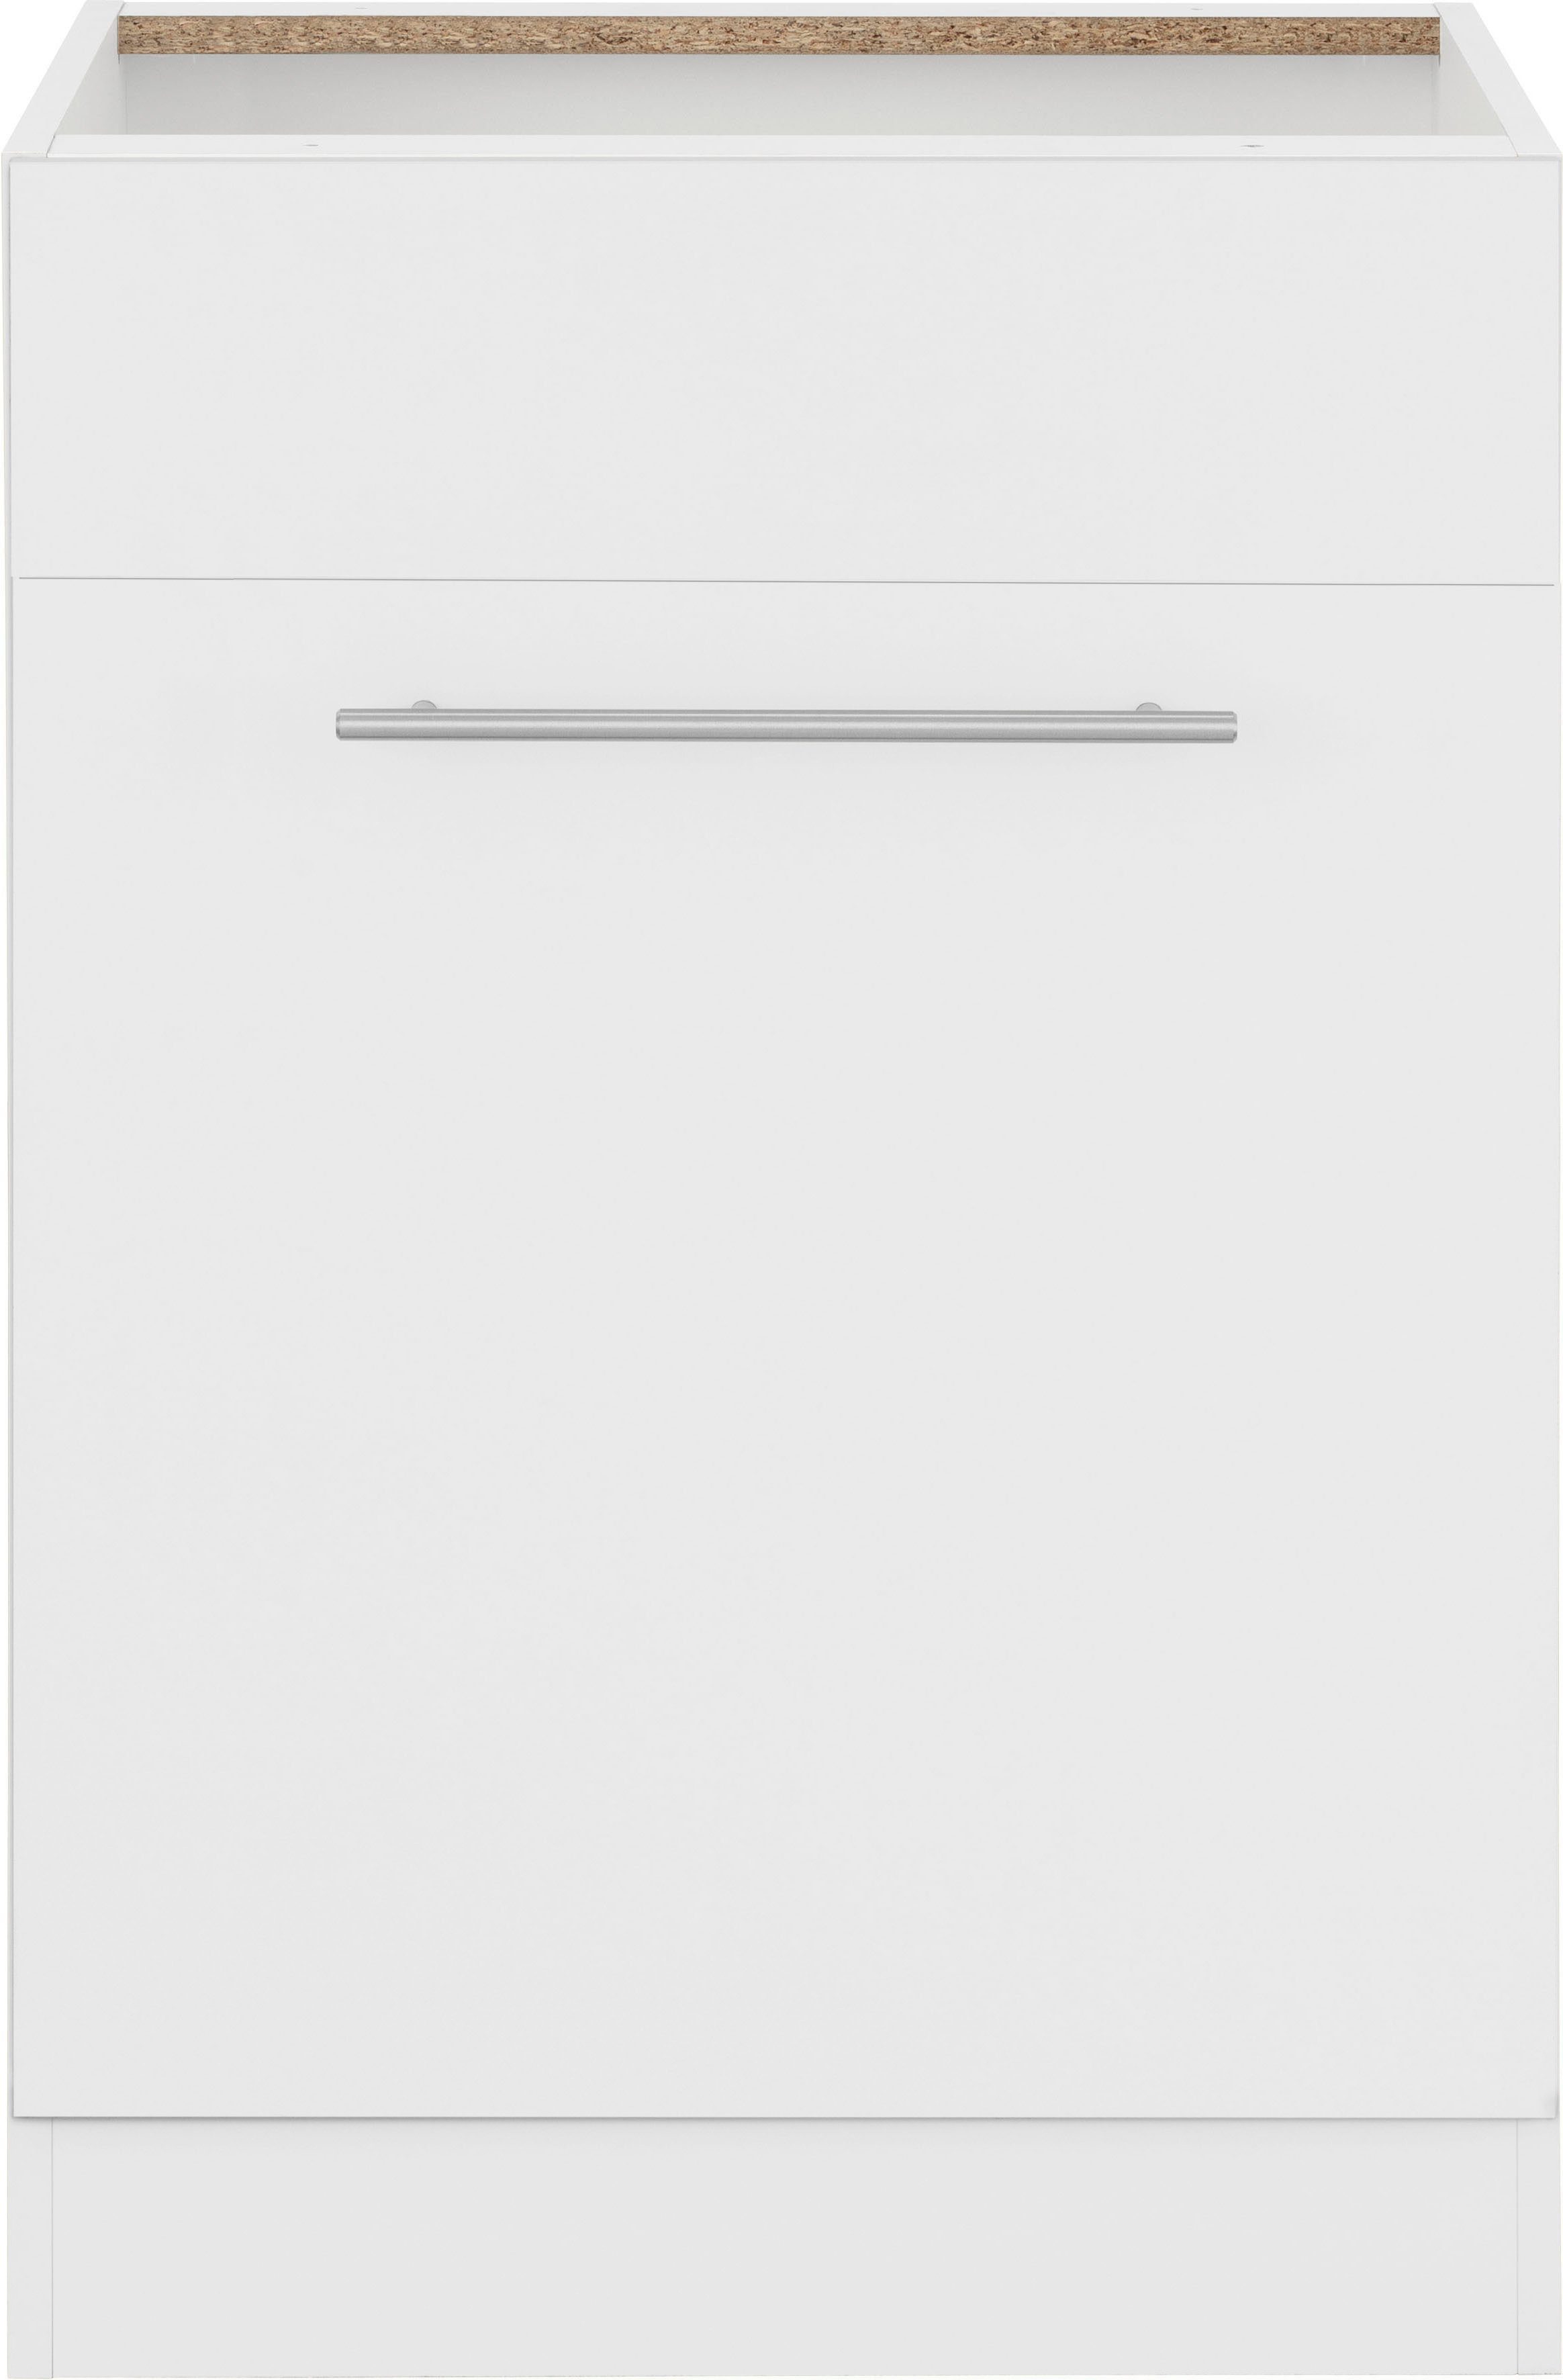 ohne | breit, Unna Weiß Spülenschrank wiho 60 cm weiß/weiß Küchen Arbeitsplatte